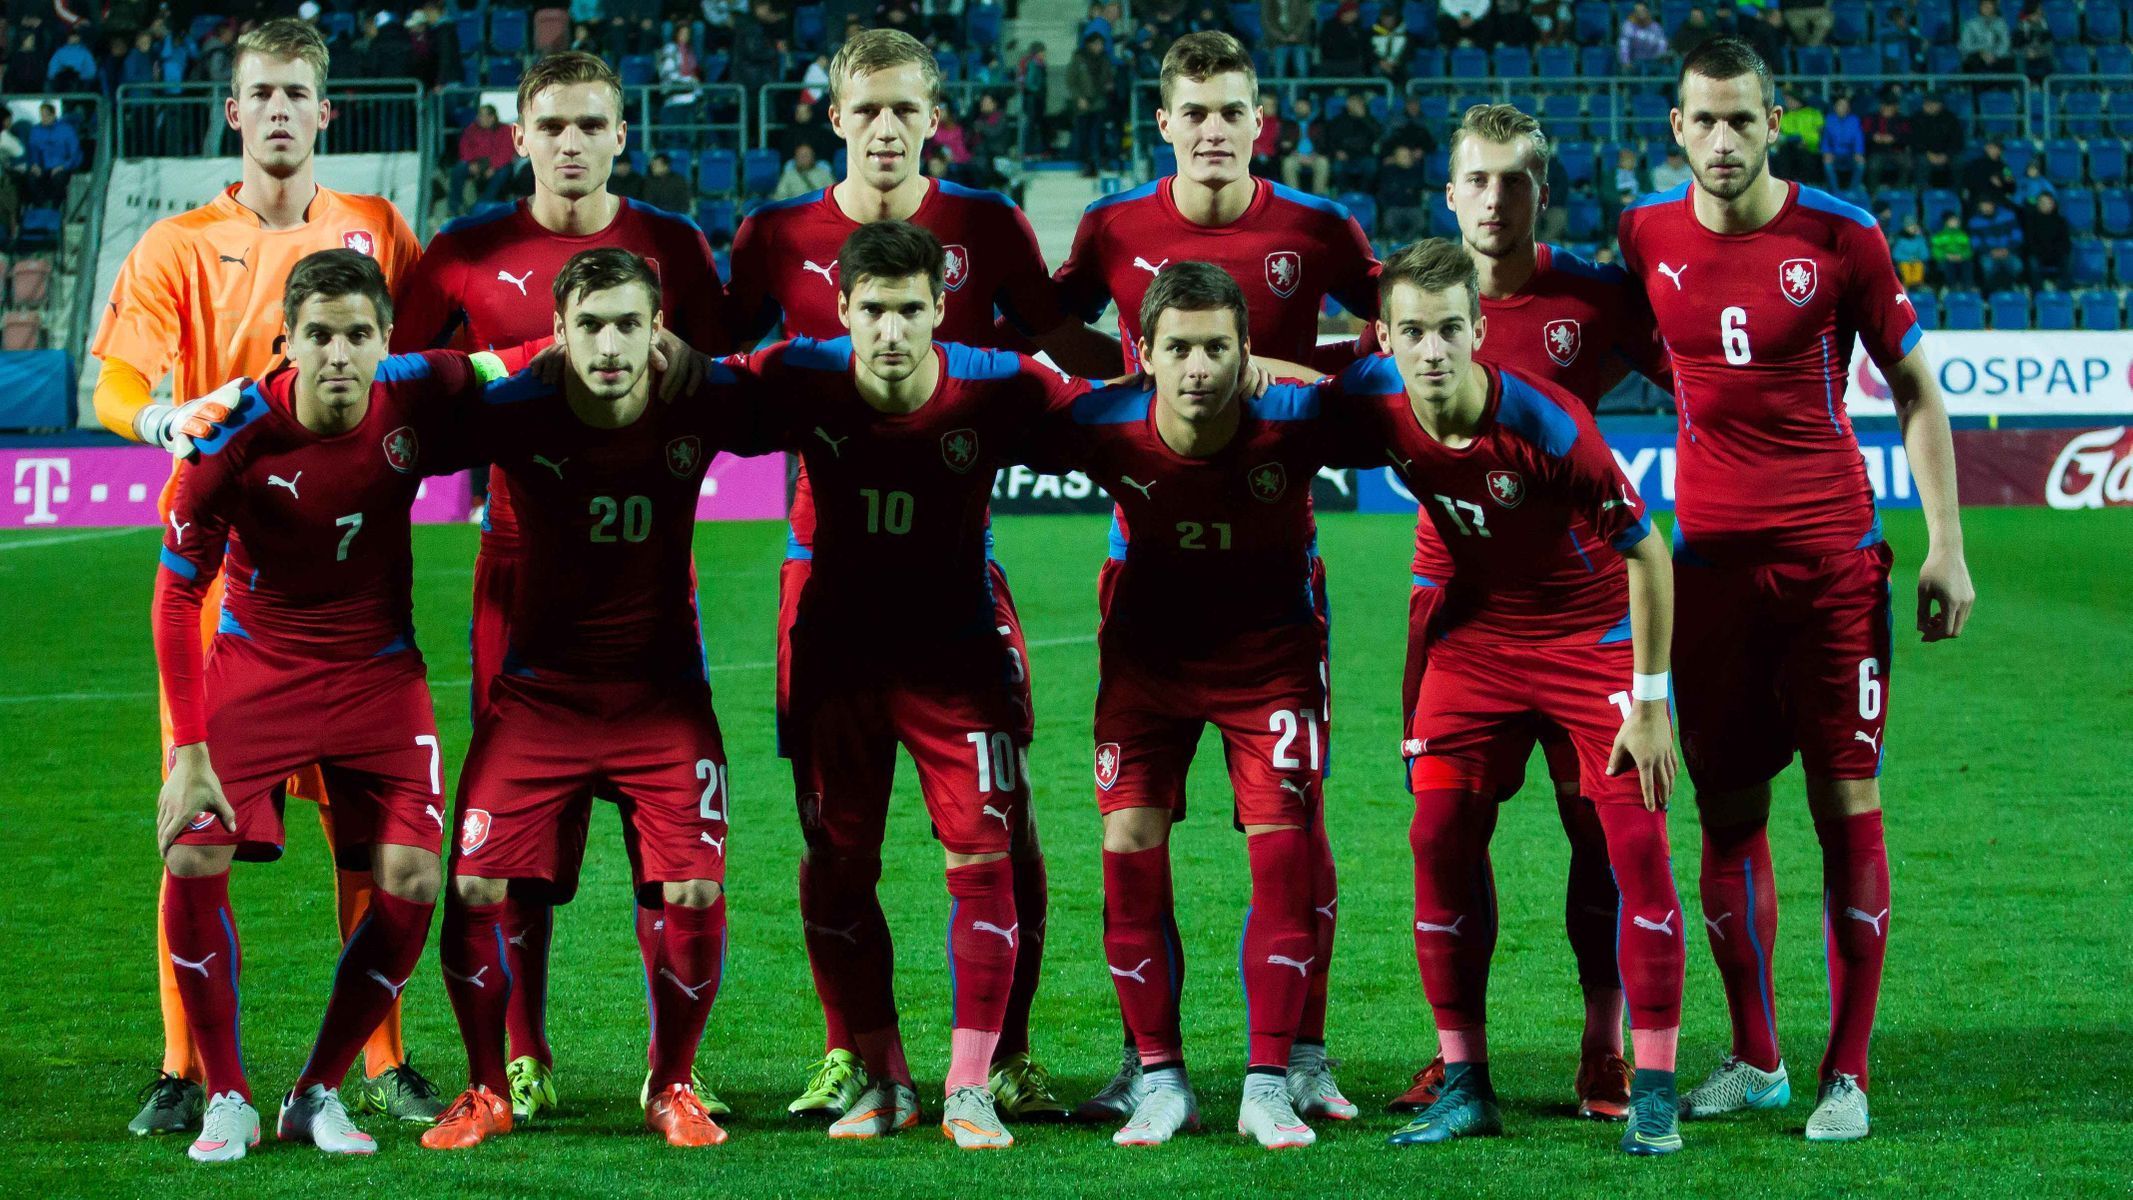 Reprezentace do 21 let v zápase proti Srbům